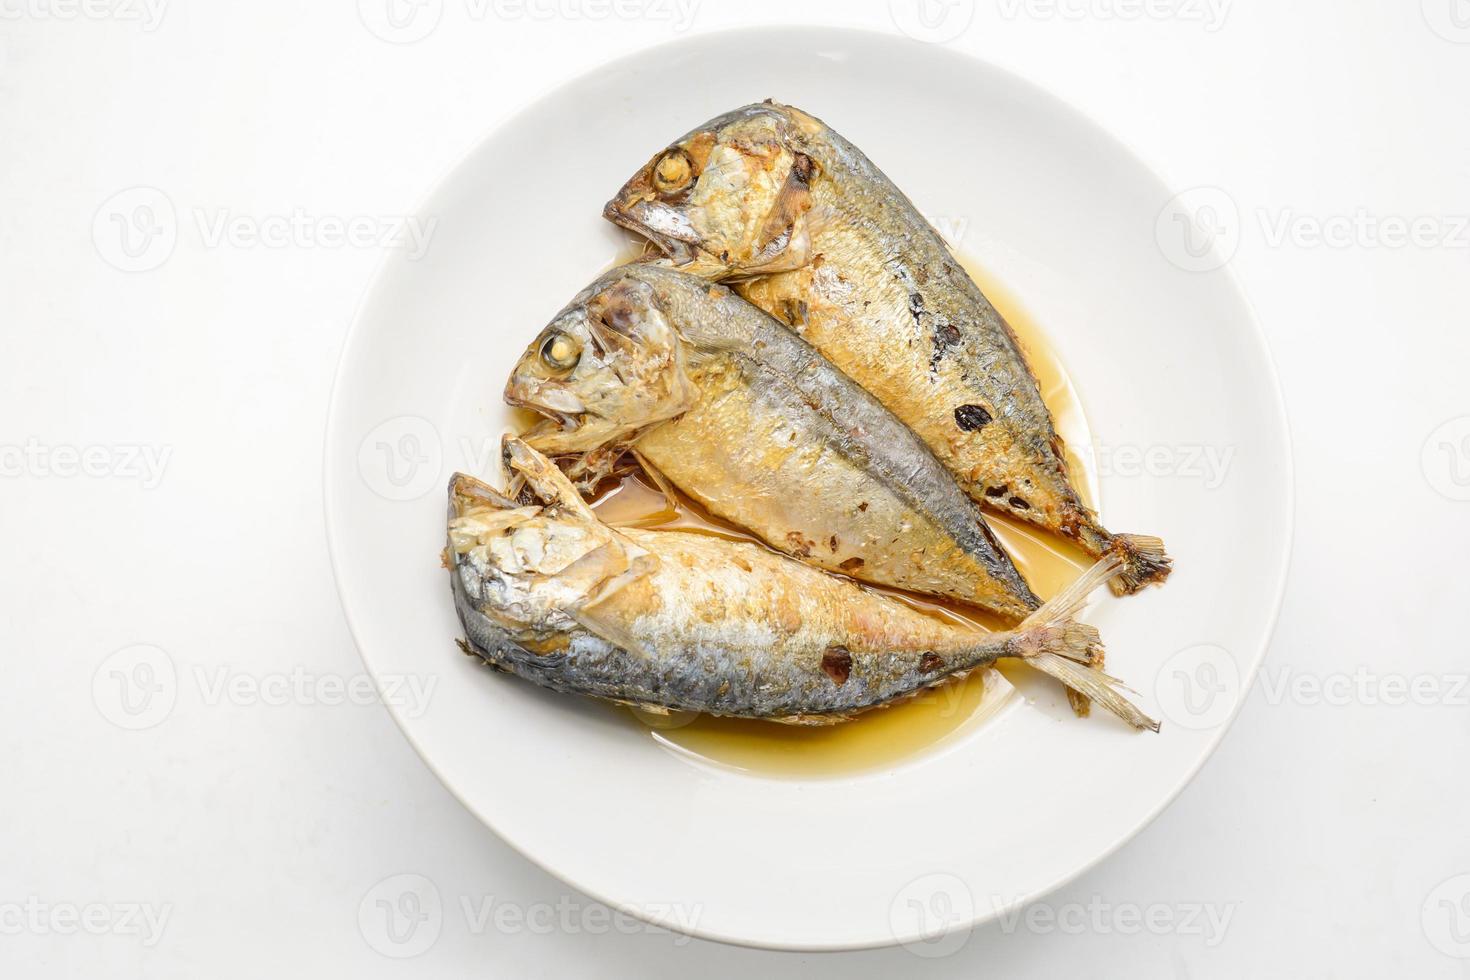 cavala frita na chapa branca. peixe frito profundo foto